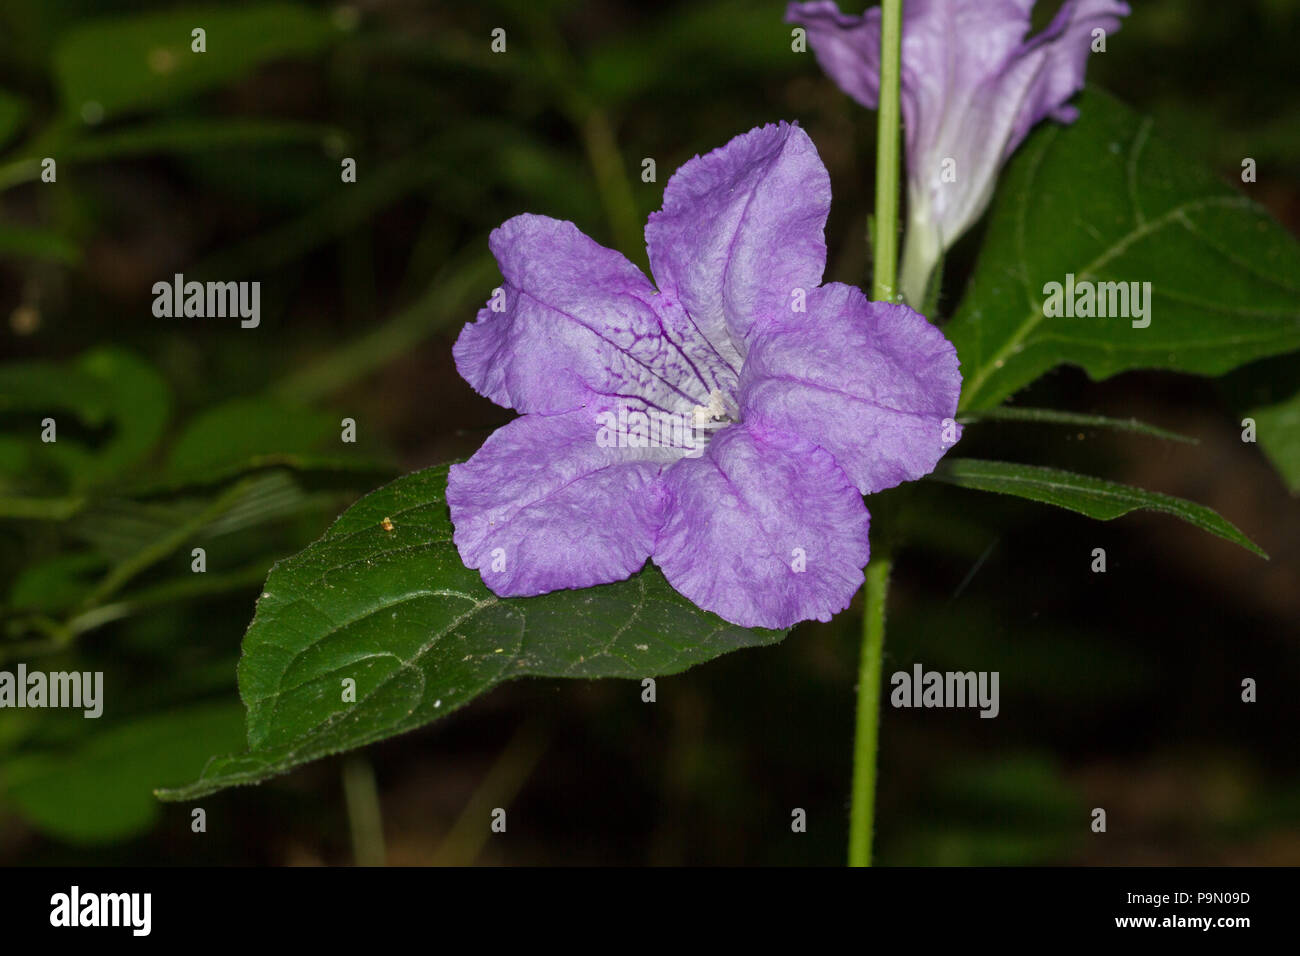 A wild petunia, Ruellia sp., blossom. Stock Photo